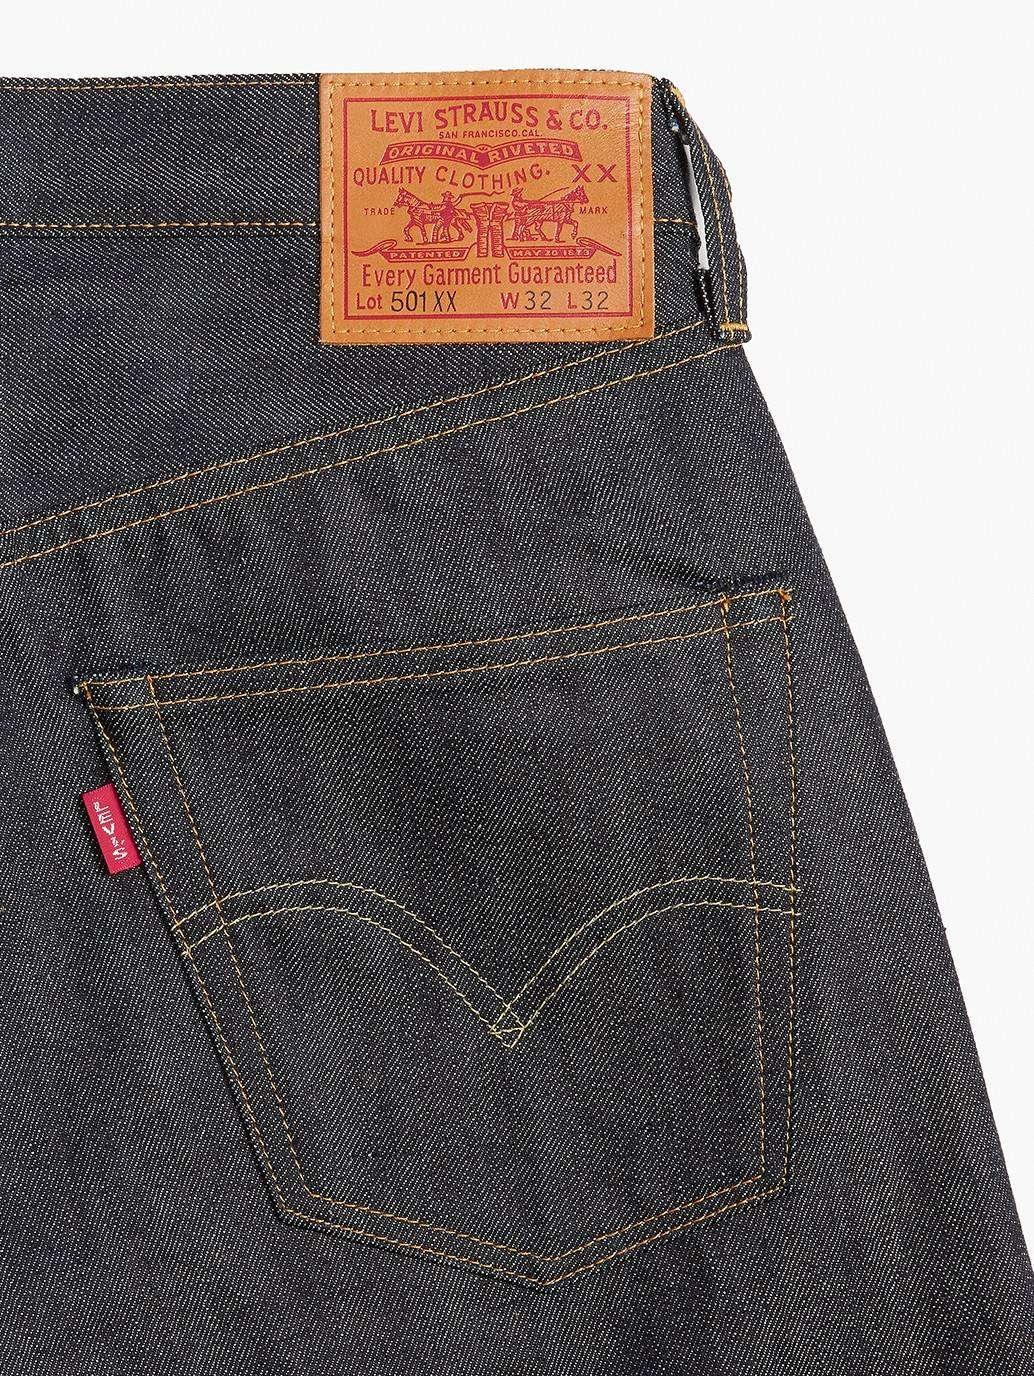 levis malaysia Levis 1947 501 Jeans 475010200 13 Details